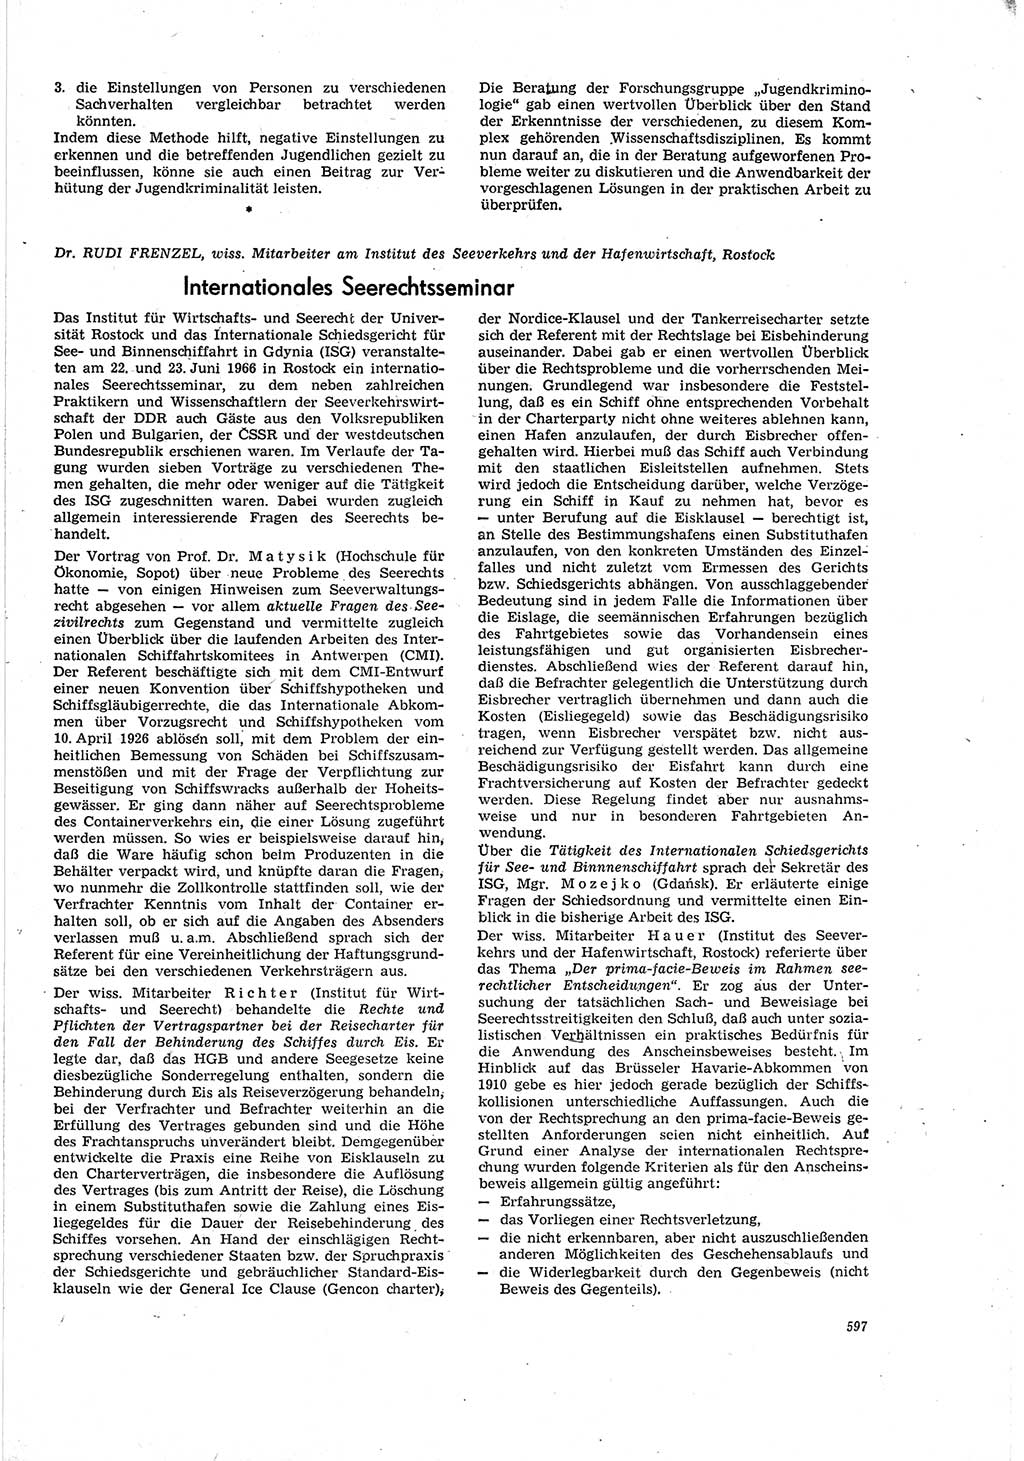 Neue Justiz (NJ), Zeitschrift für Recht und Rechtswissenschaft [Deutsche Demokratische Republik (DDR)], 20. Jahrgang 1966, Seite 597 (NJ DDR 1966, S. 597)